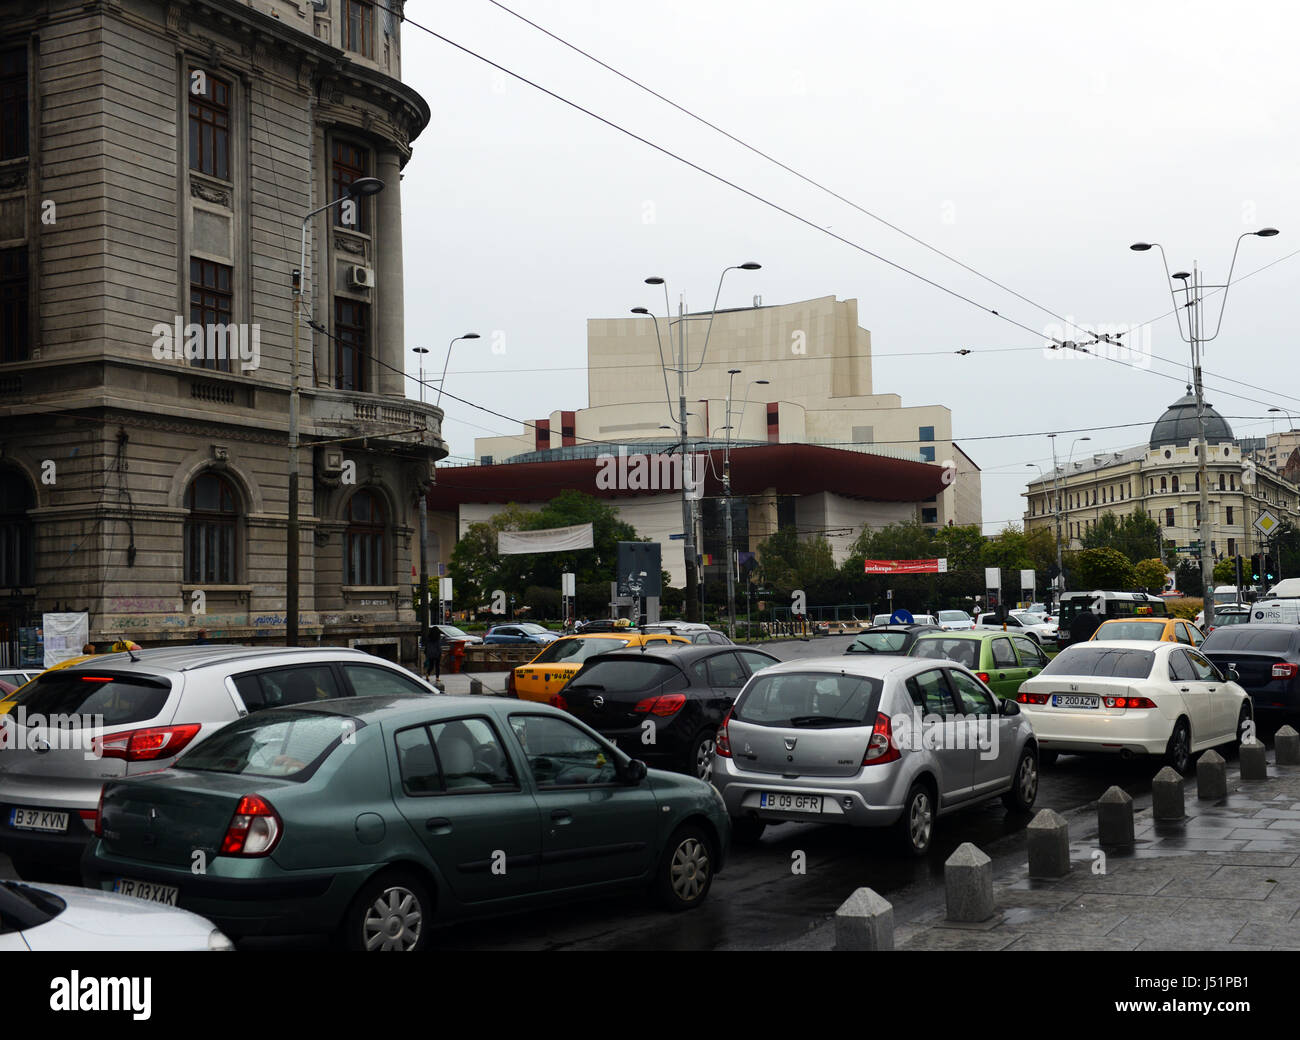 Il traffico su Nicolae Bălcescu avenue vicino al teatro nazionale e universitate cerchio in Bucharest city center. Foto Stock